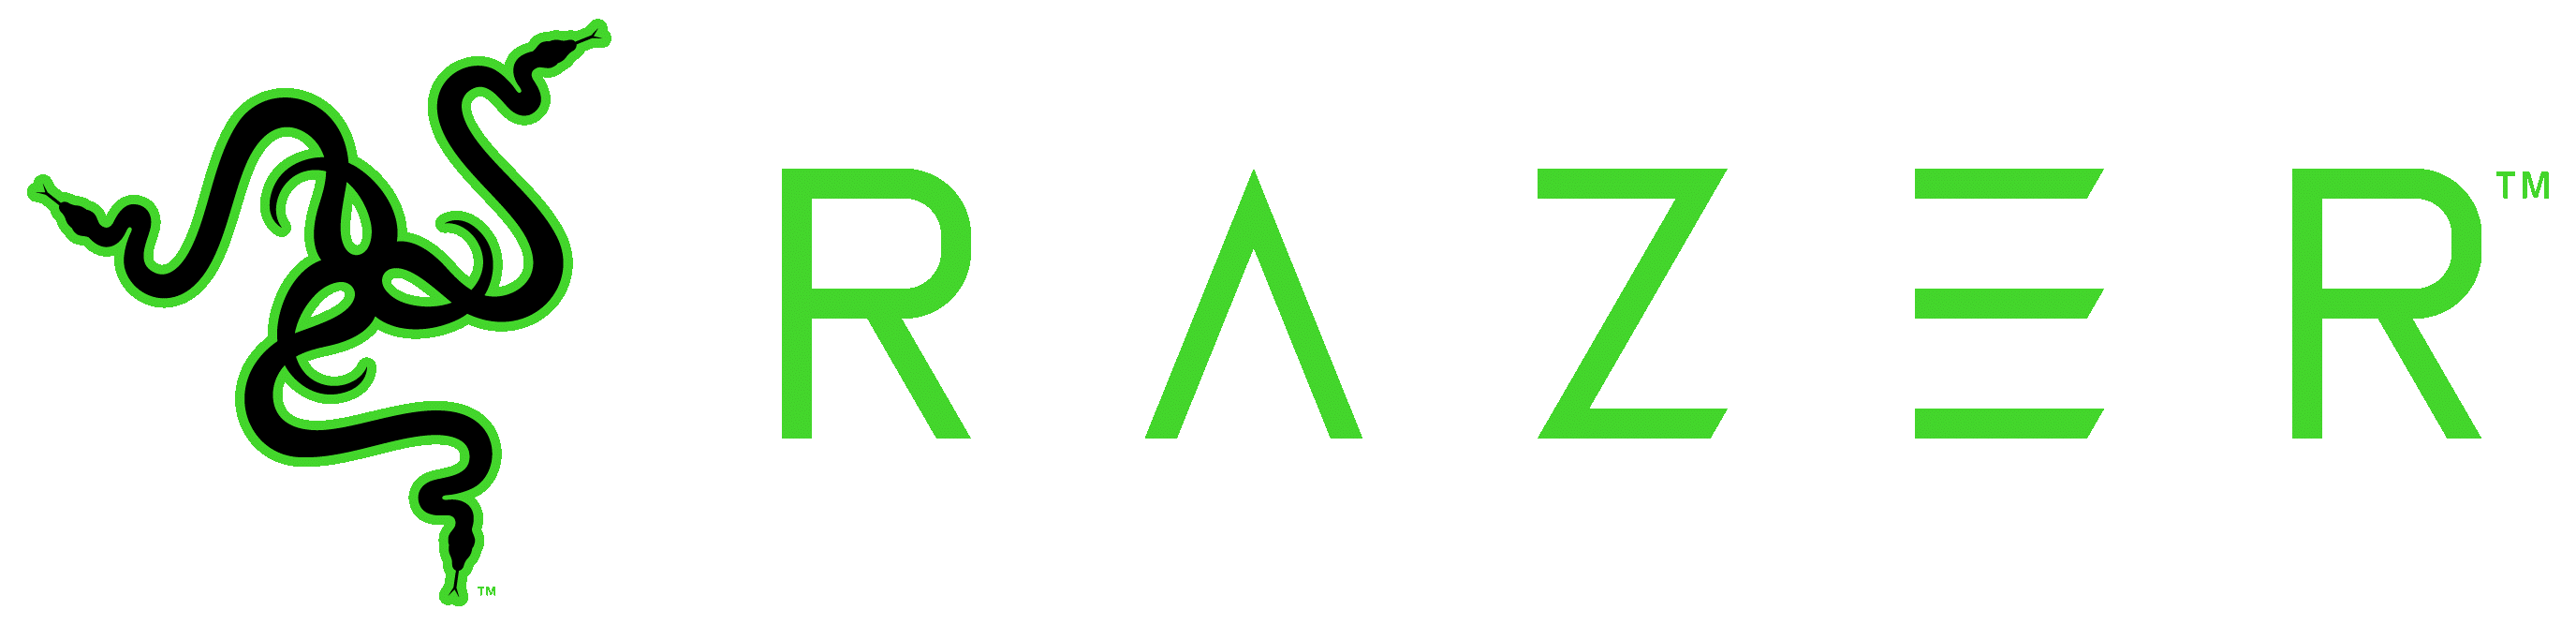 Логотип Razer.